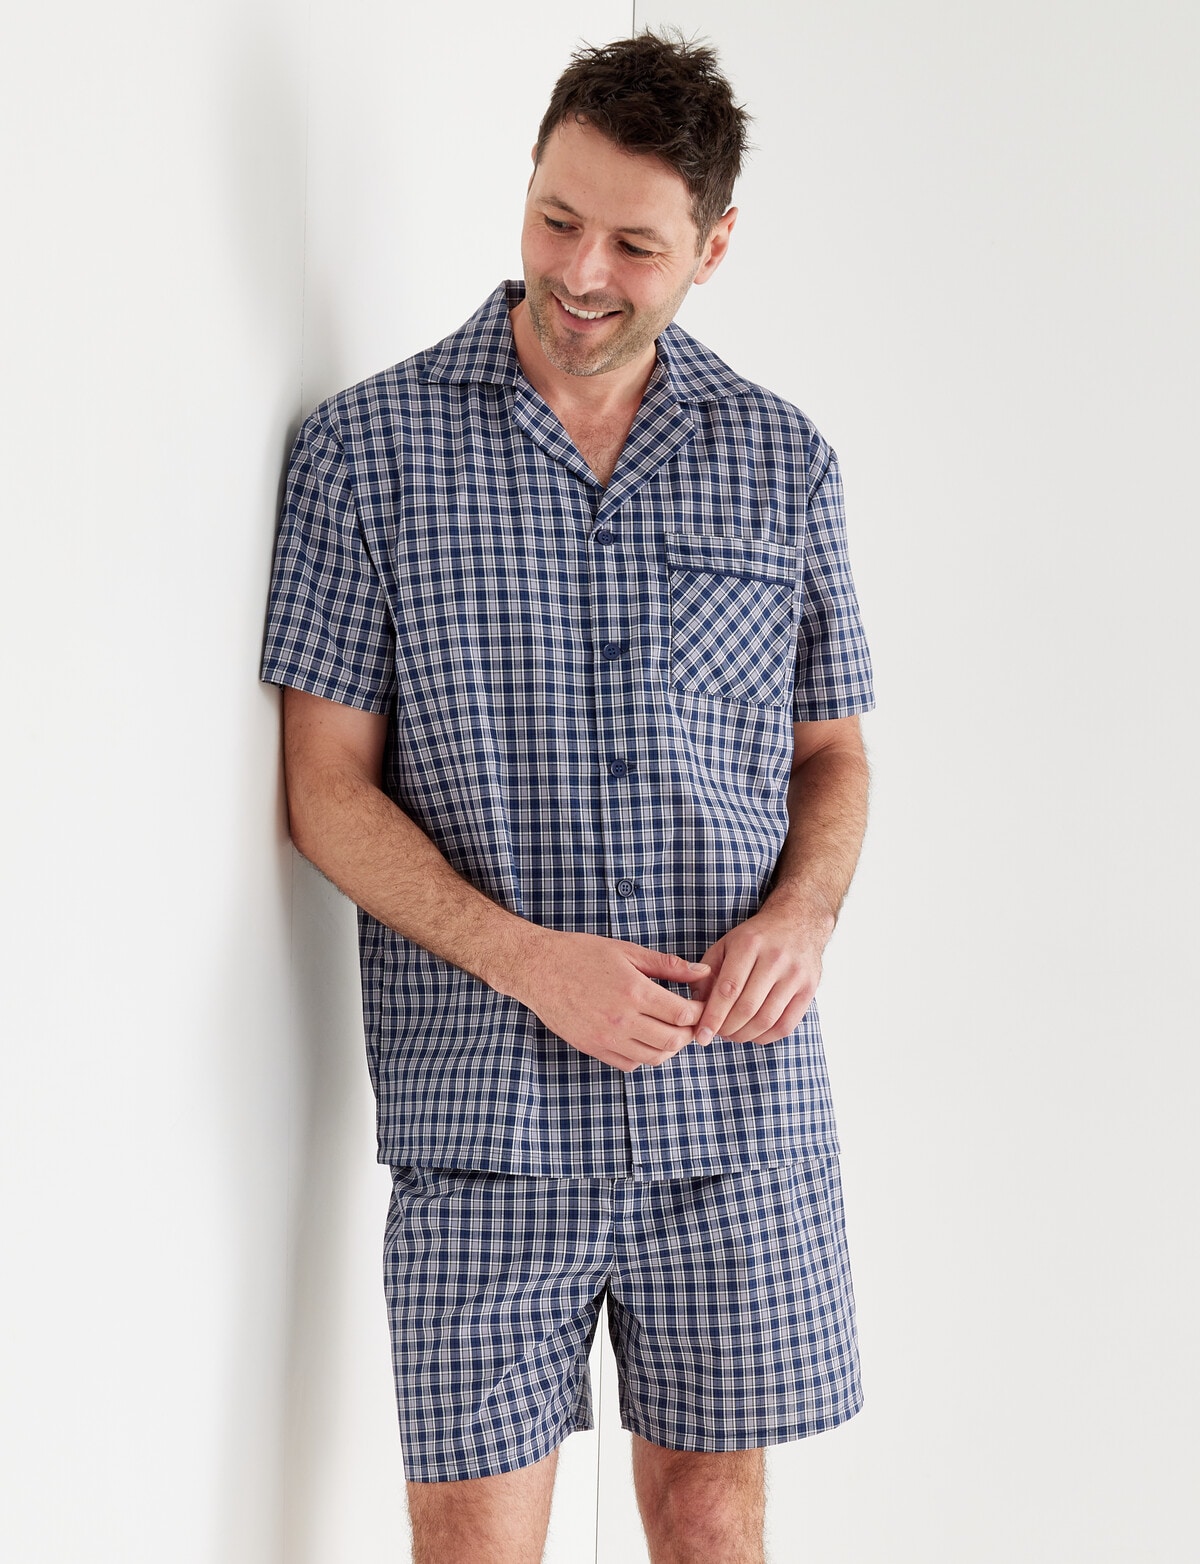 Chisel Woven Check Short PJ Set, Blue, Grey & White - Sleepwear